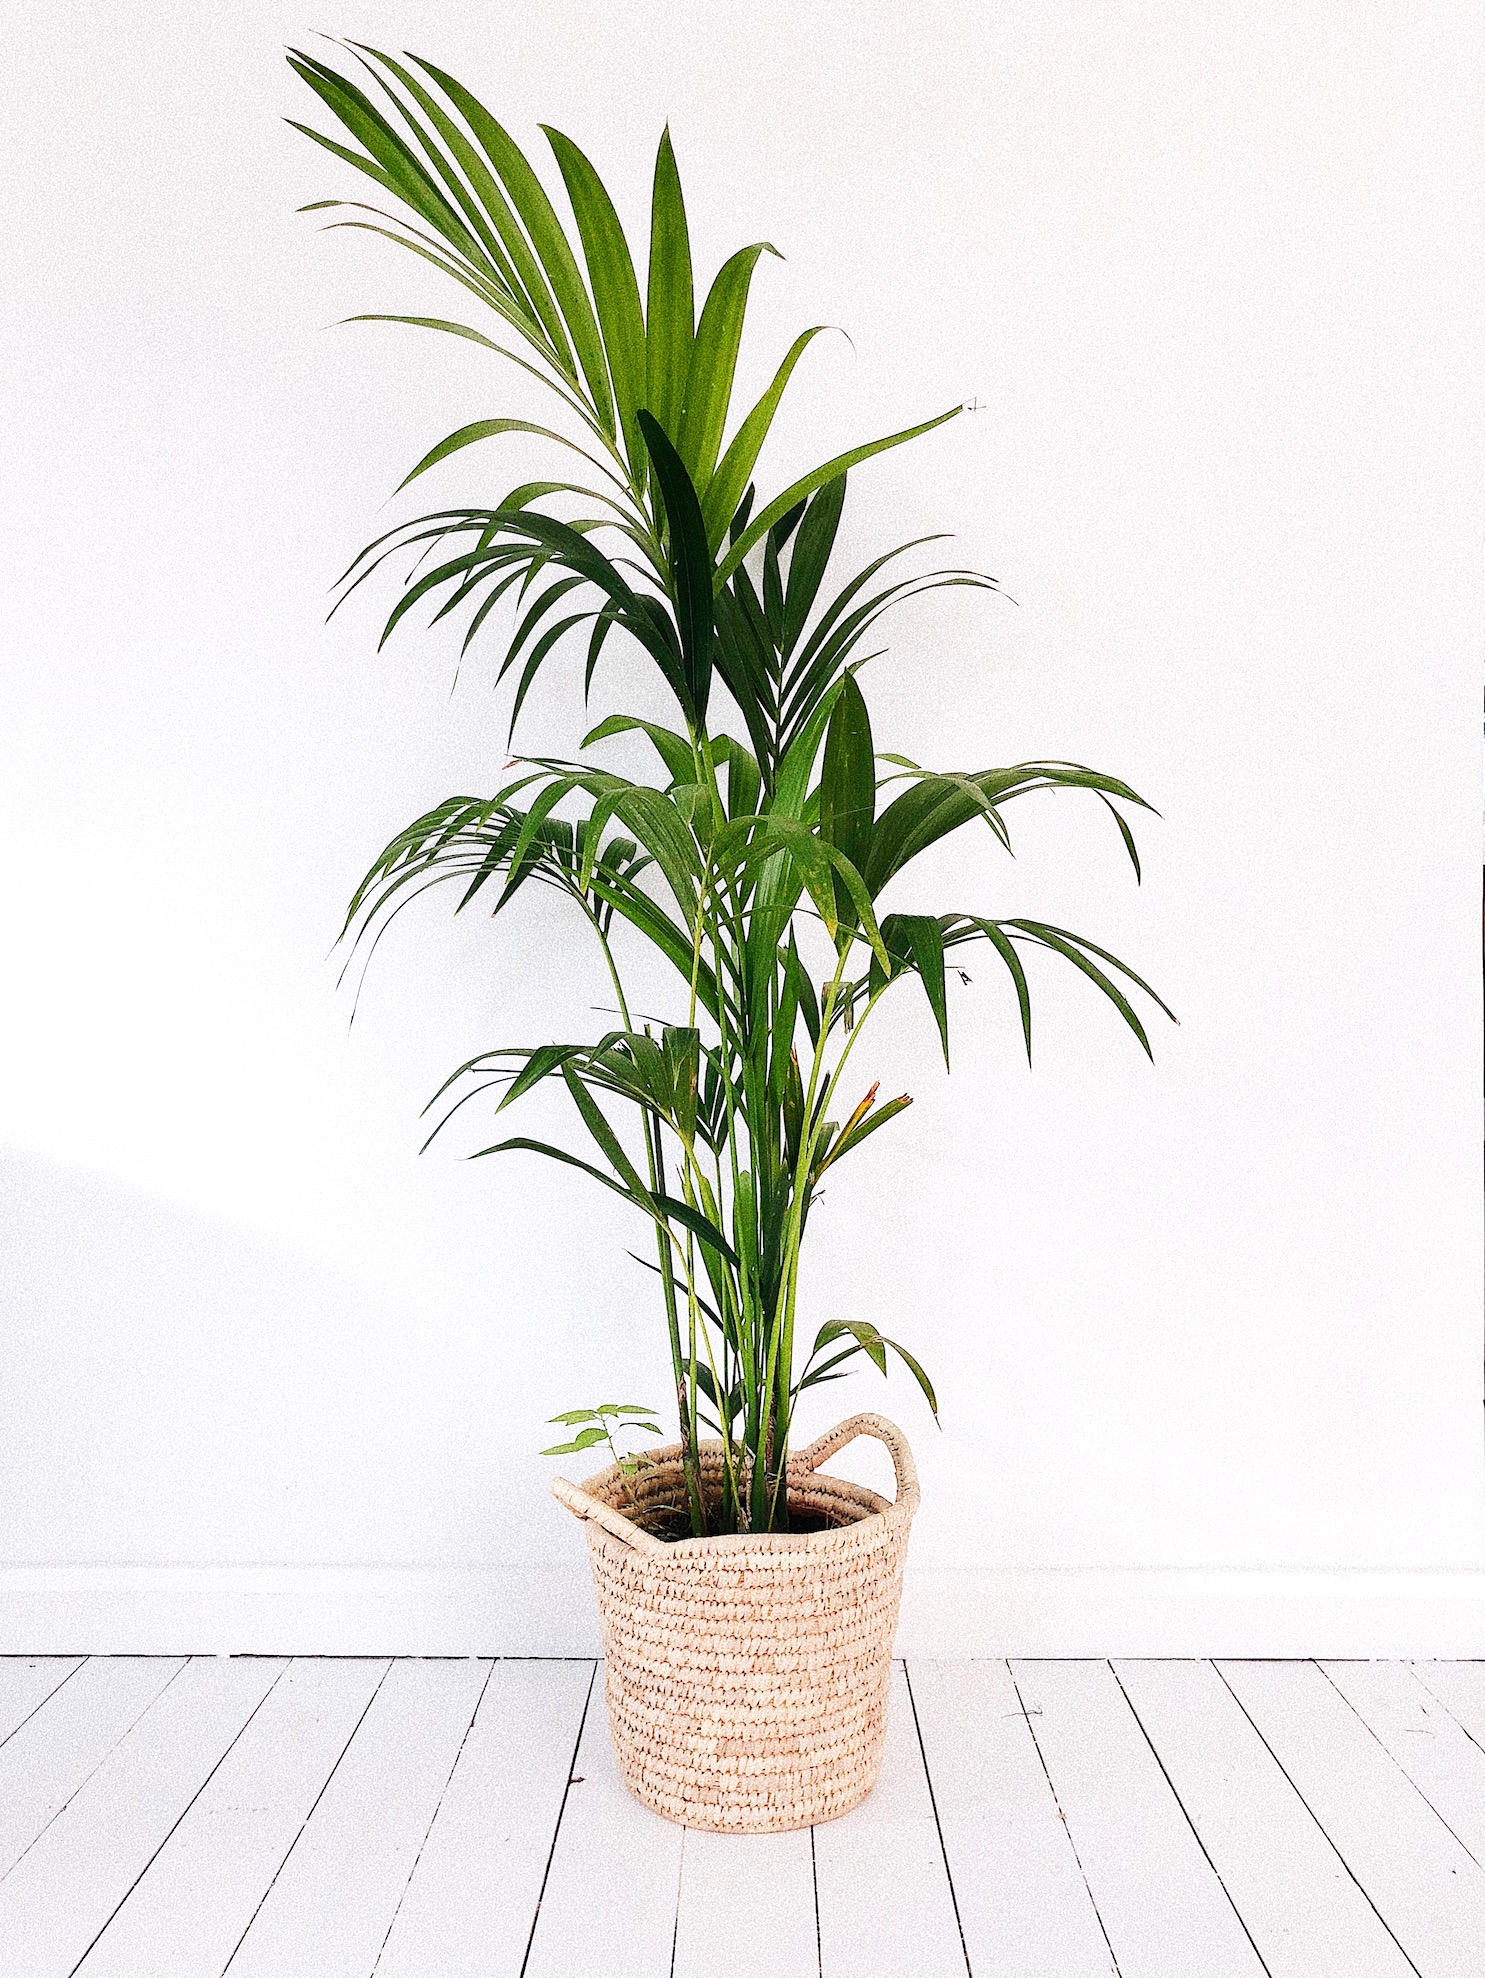 Non-toxic Houseplants Kentia Palm